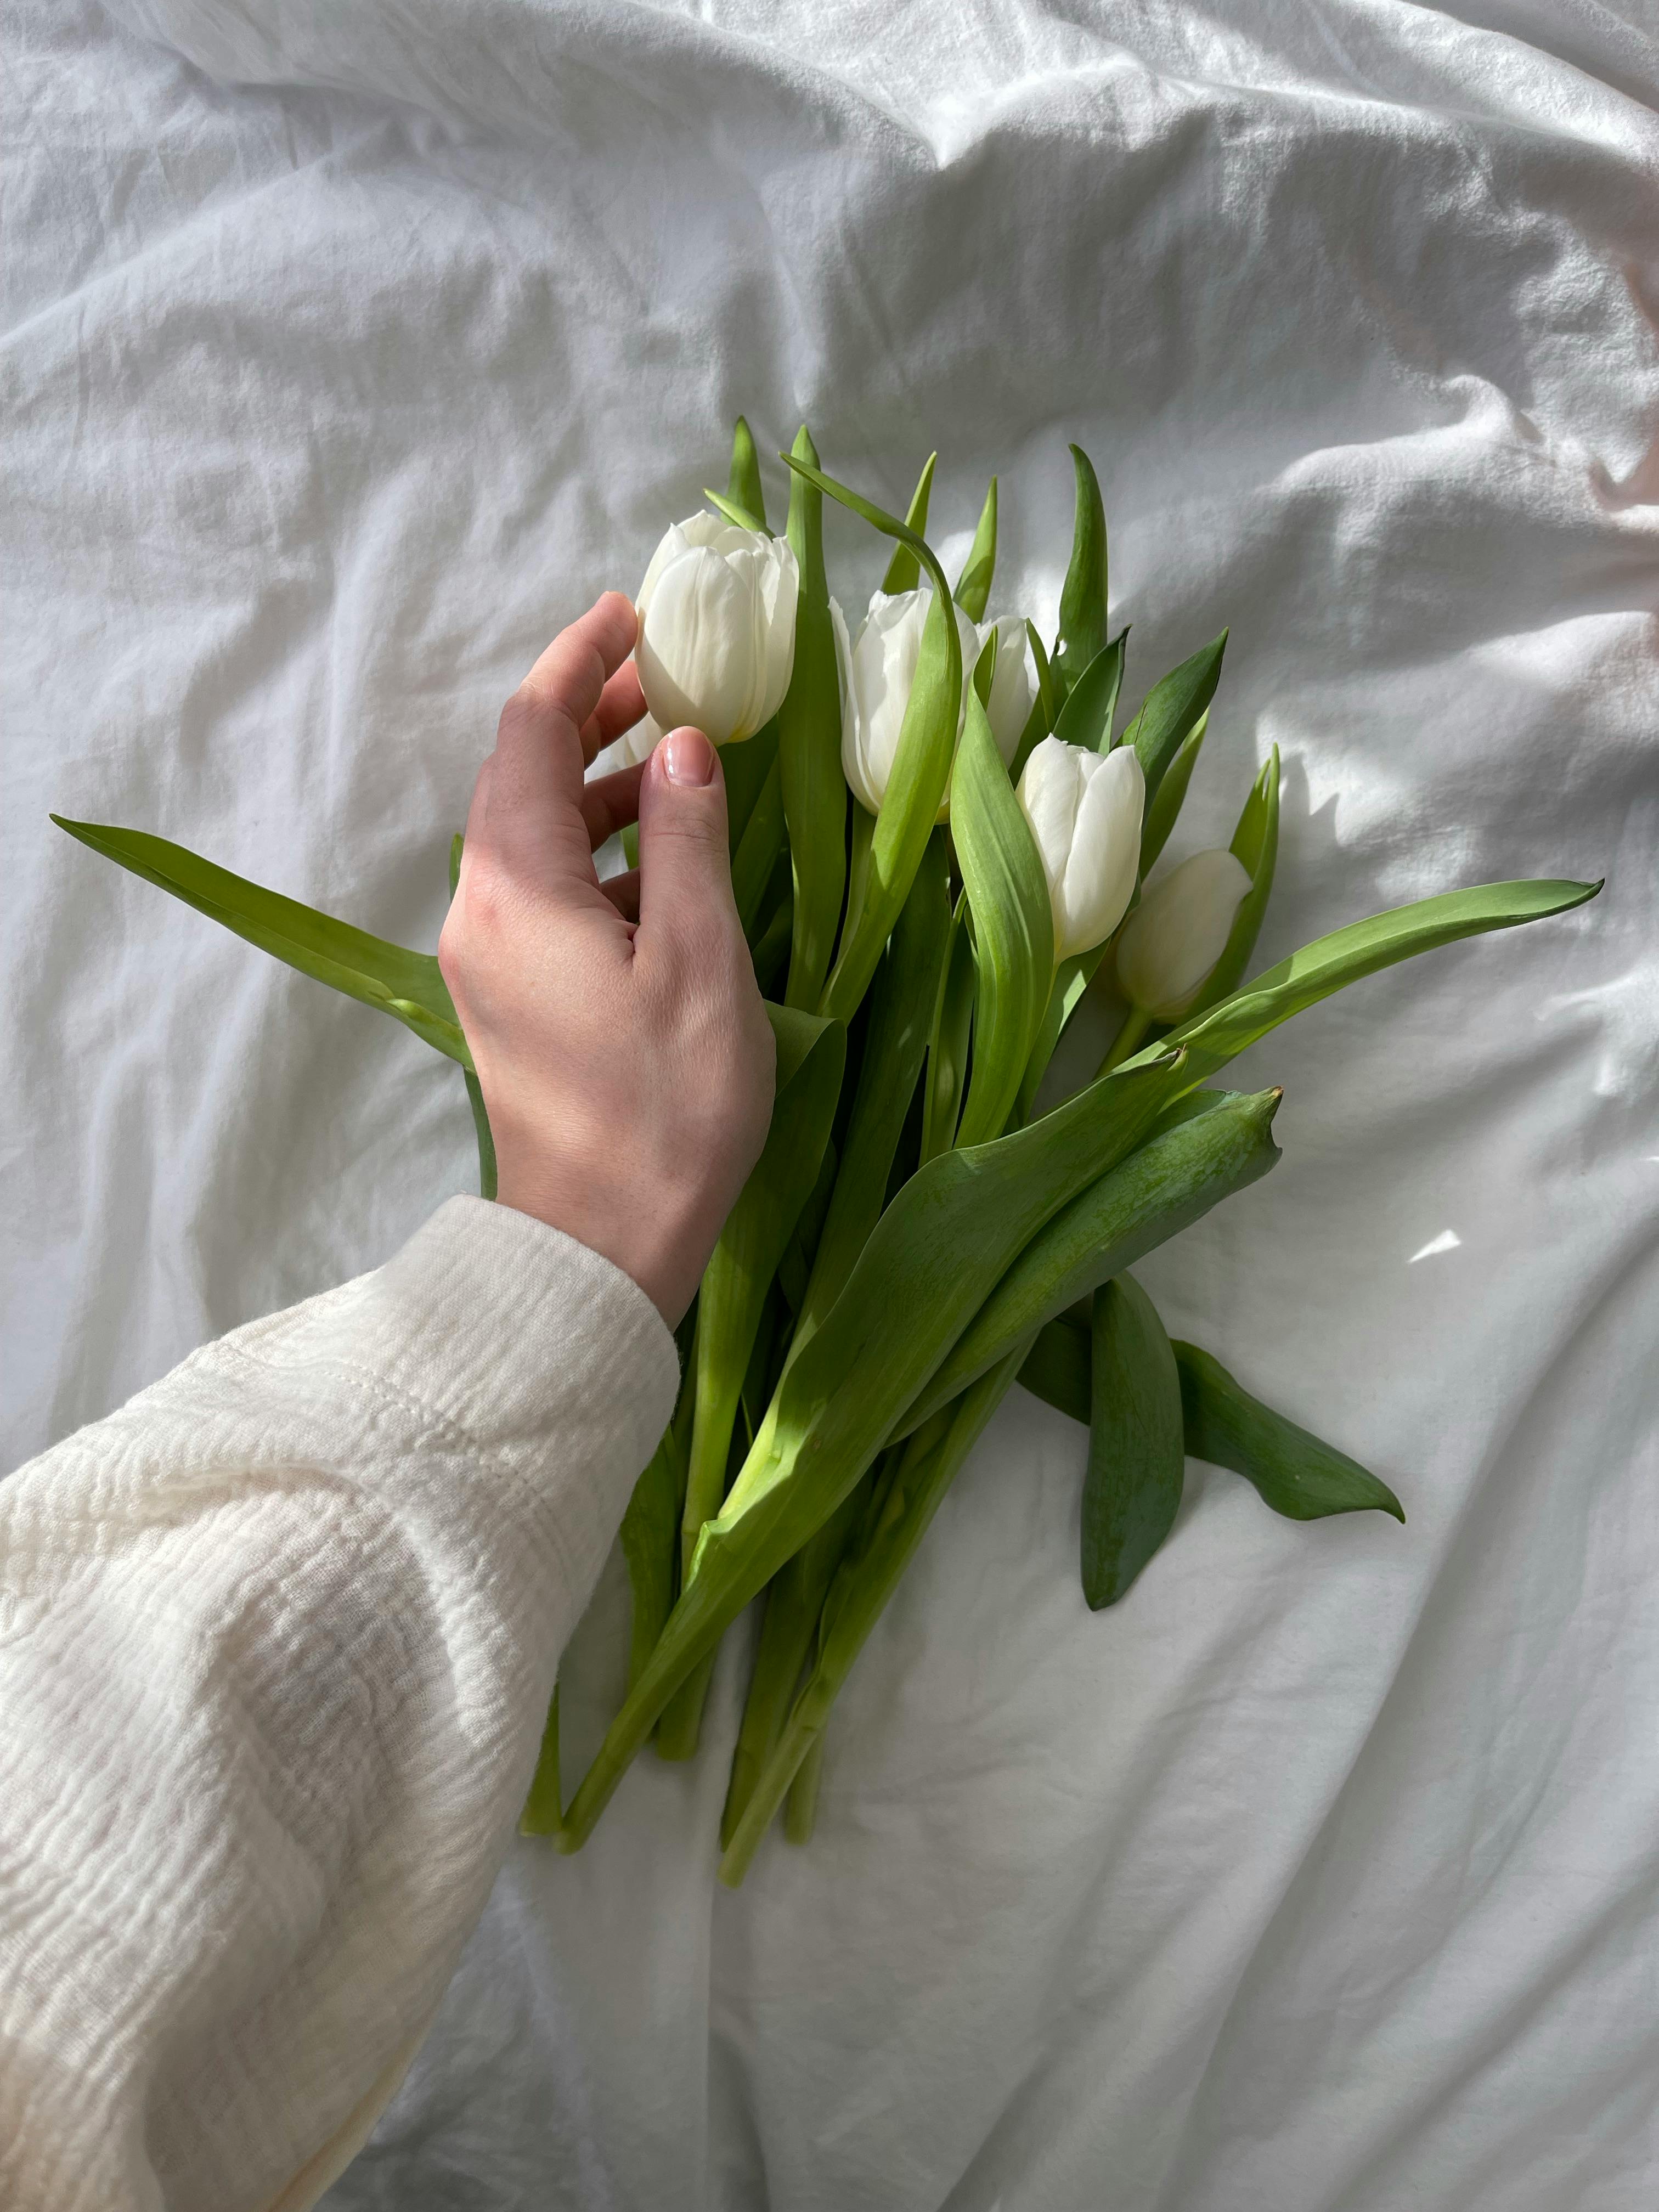 Hand Touching Tulips · Free Stock Photo